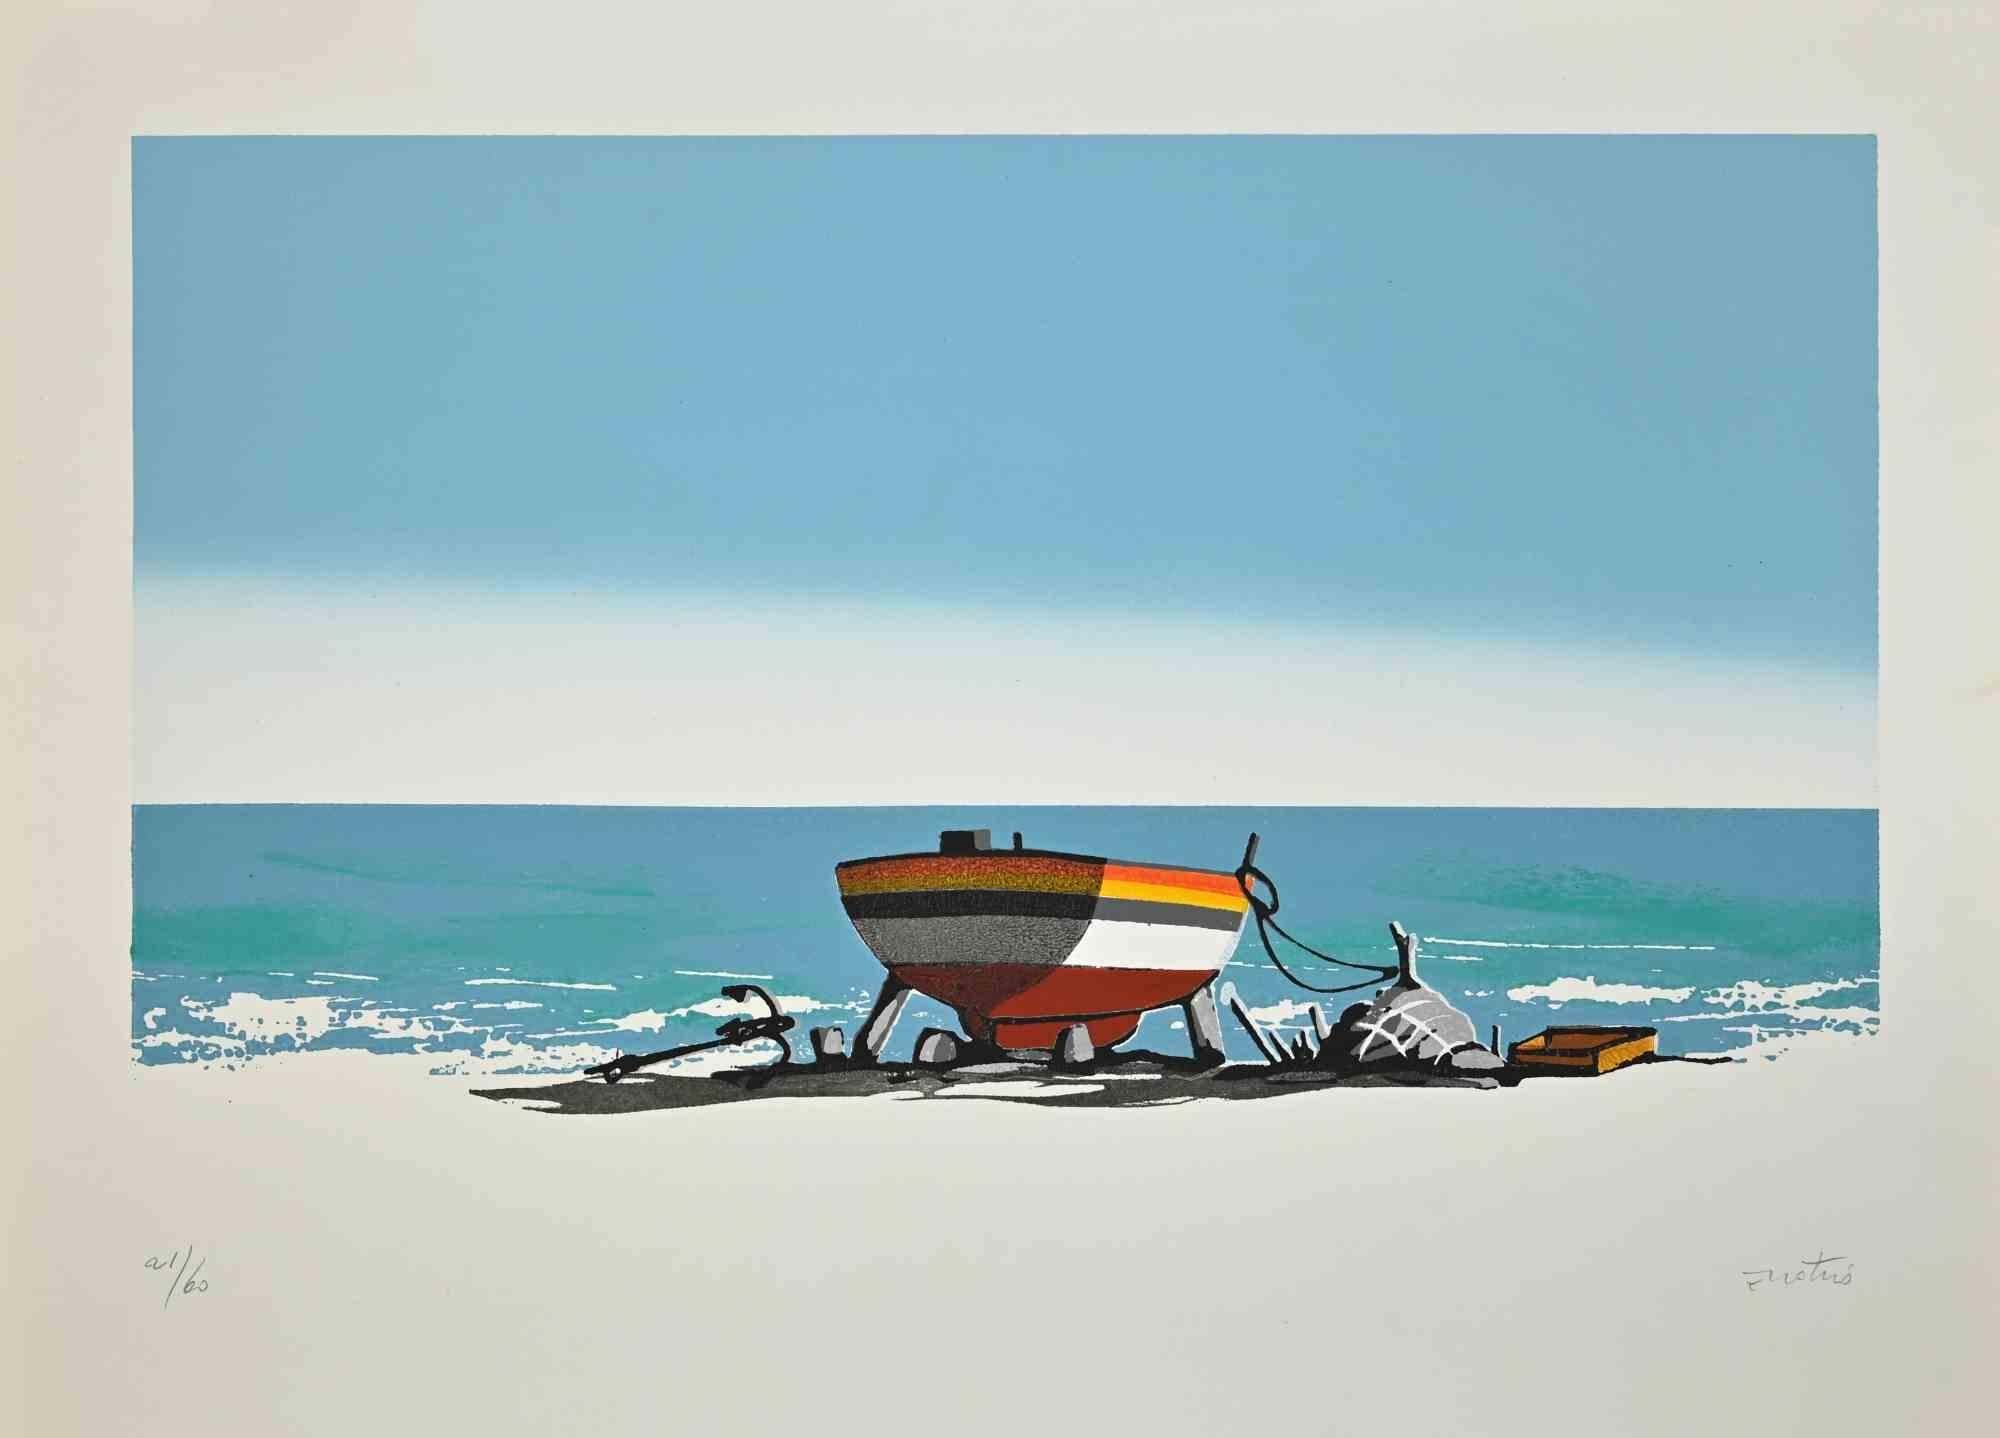 Seascape With A Boat ist ein Siebdruck von Enotrio Pugliese aus den 1960er Jahren.

Handsigniert vom Künstler auf der Unterseite.

Nummerierte, limitierte Auflage von 21/60 Drucken.

Sehr guter Zustand.

Enotrio Pugliese (11. Mai 1920 - August 1989)